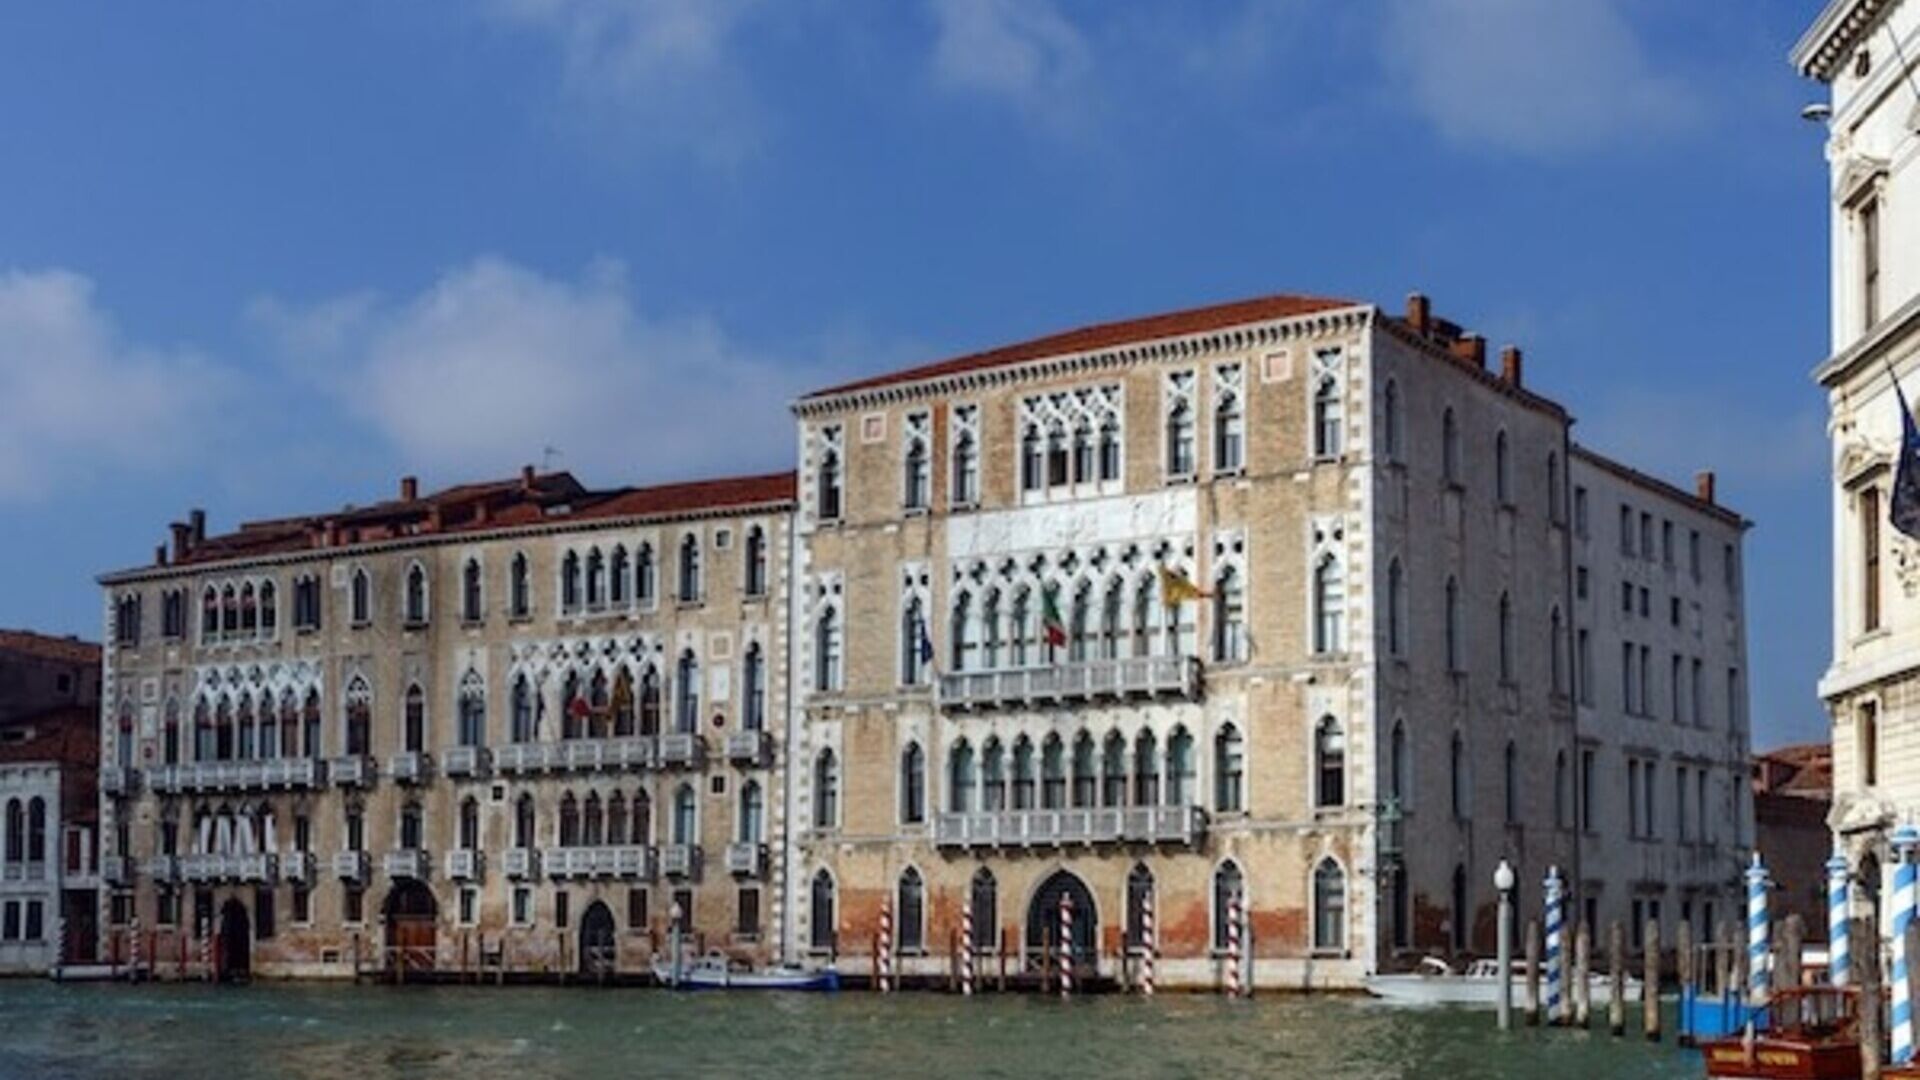 Crostacei: l'Università Ca' Foscari Venezia è un ateneo statale italiano del capoluogo della Regione italiana del Veneto, fondato nel 1868